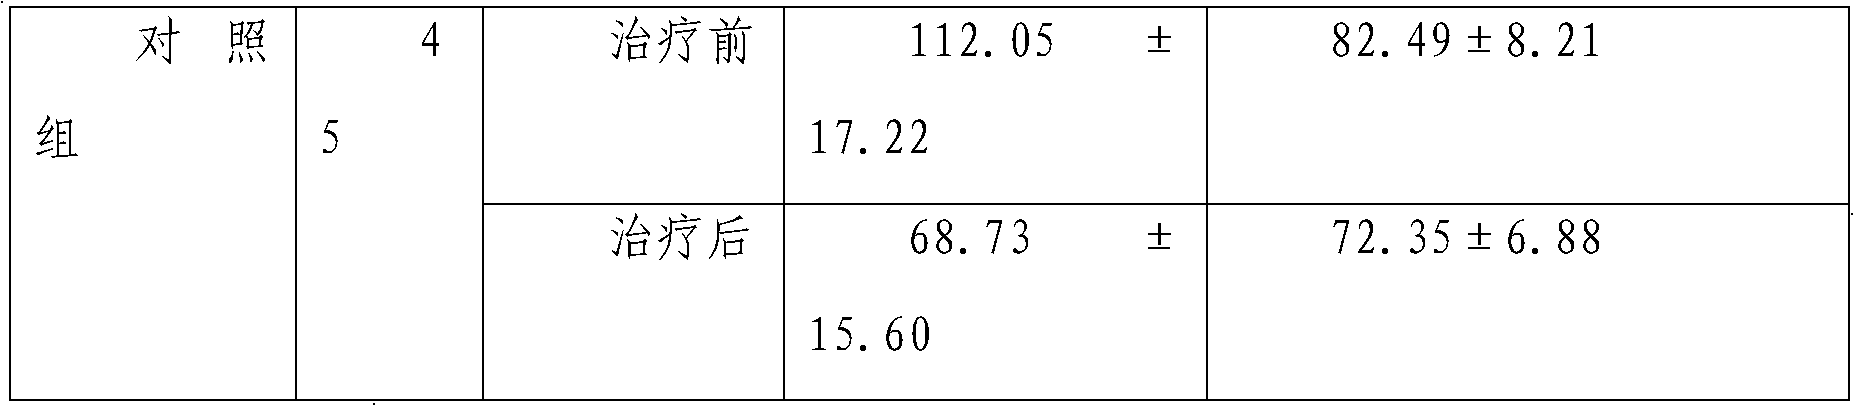 Dual-cordis effect of Xin Keshu